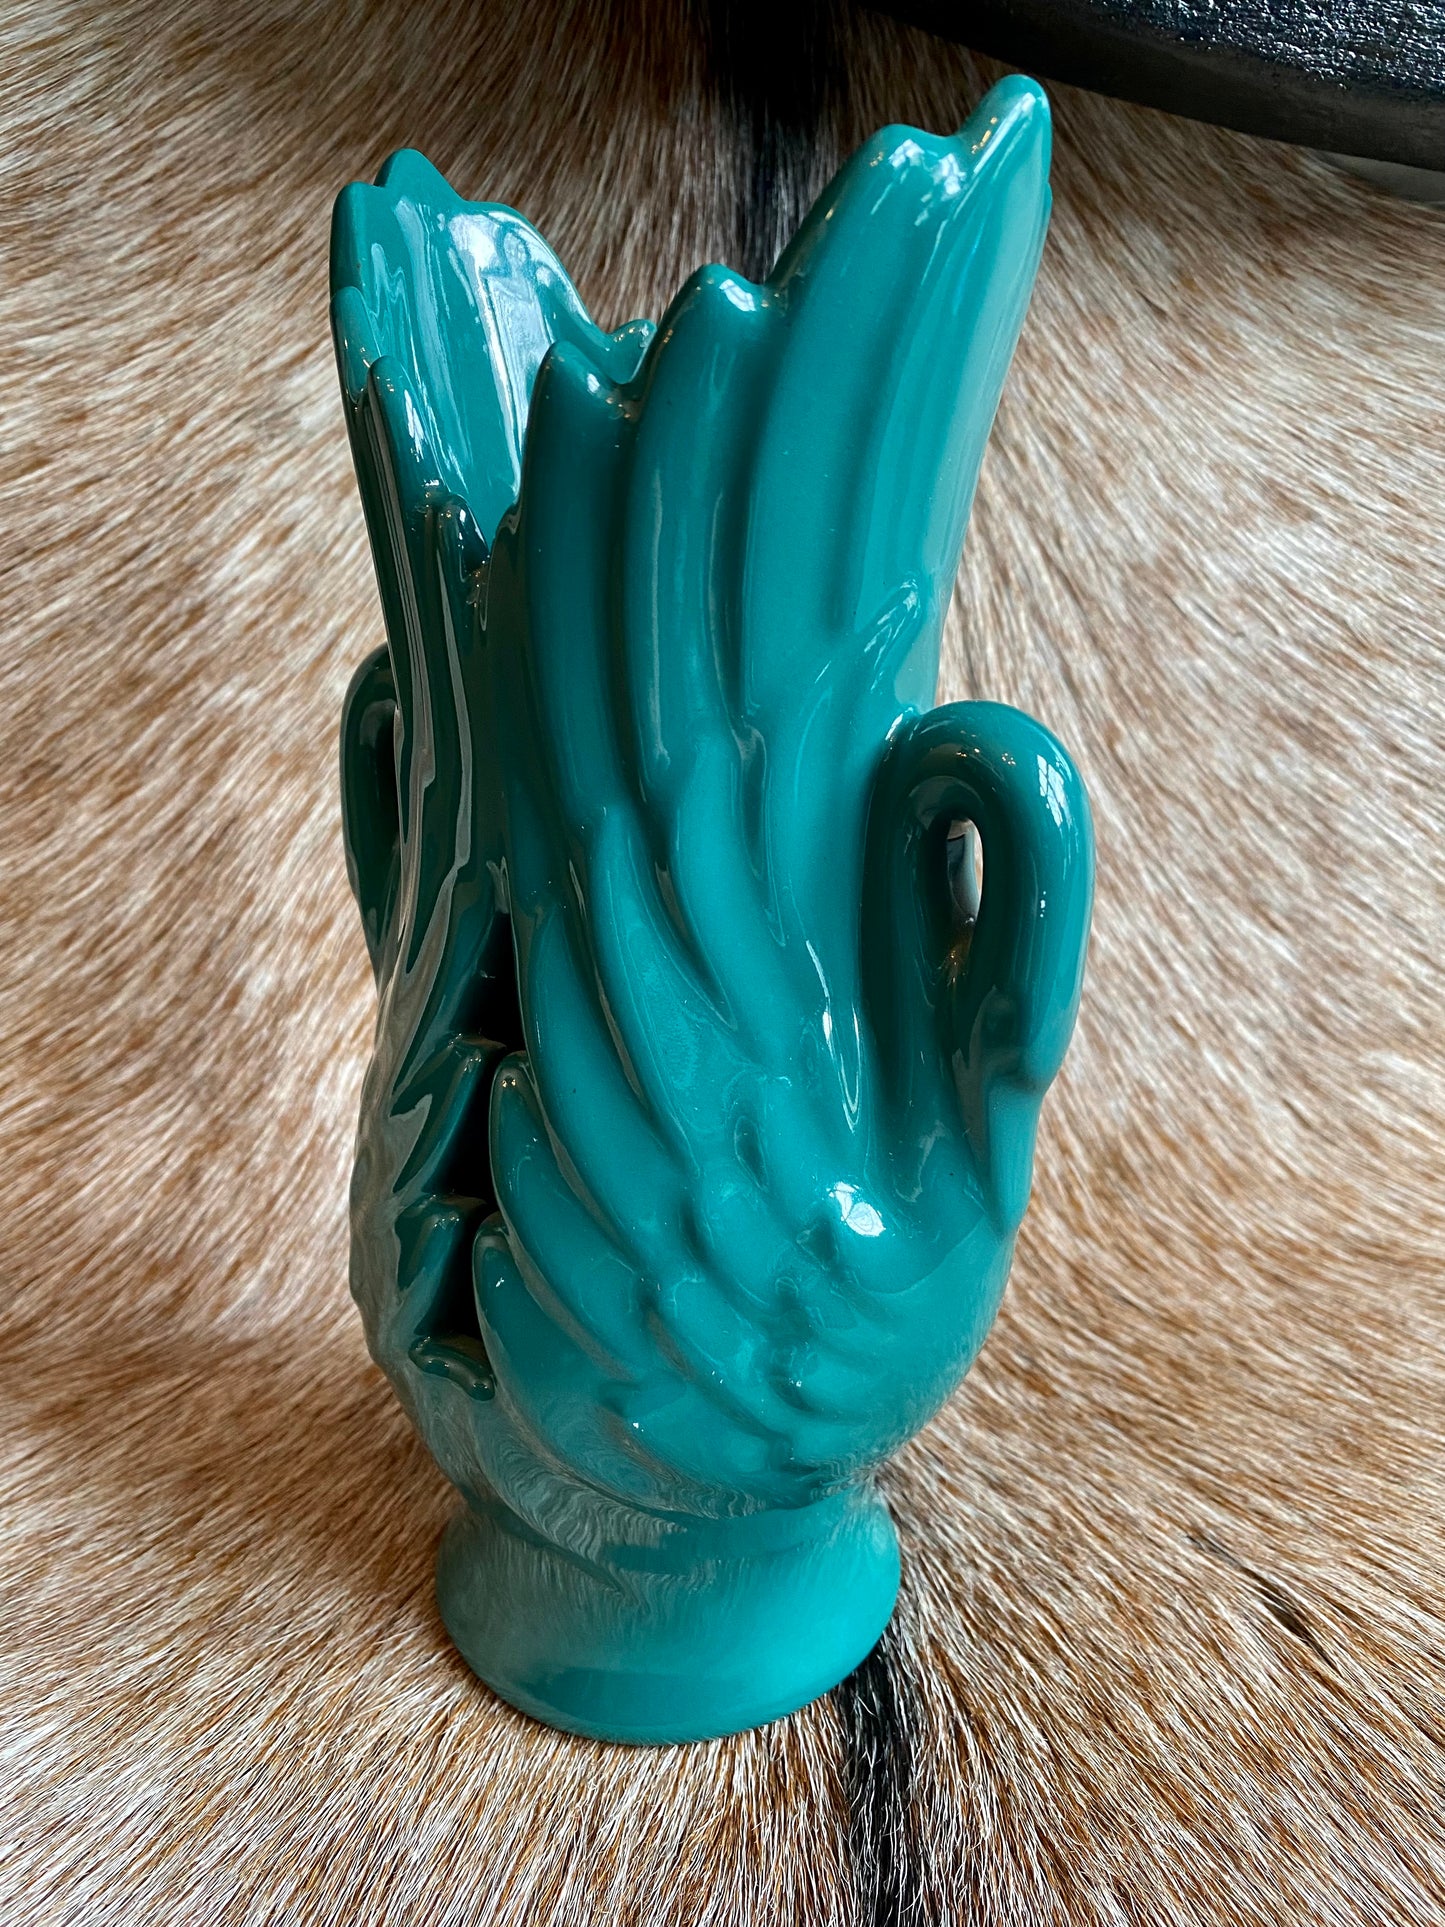 Teal Art Nouveau Vase